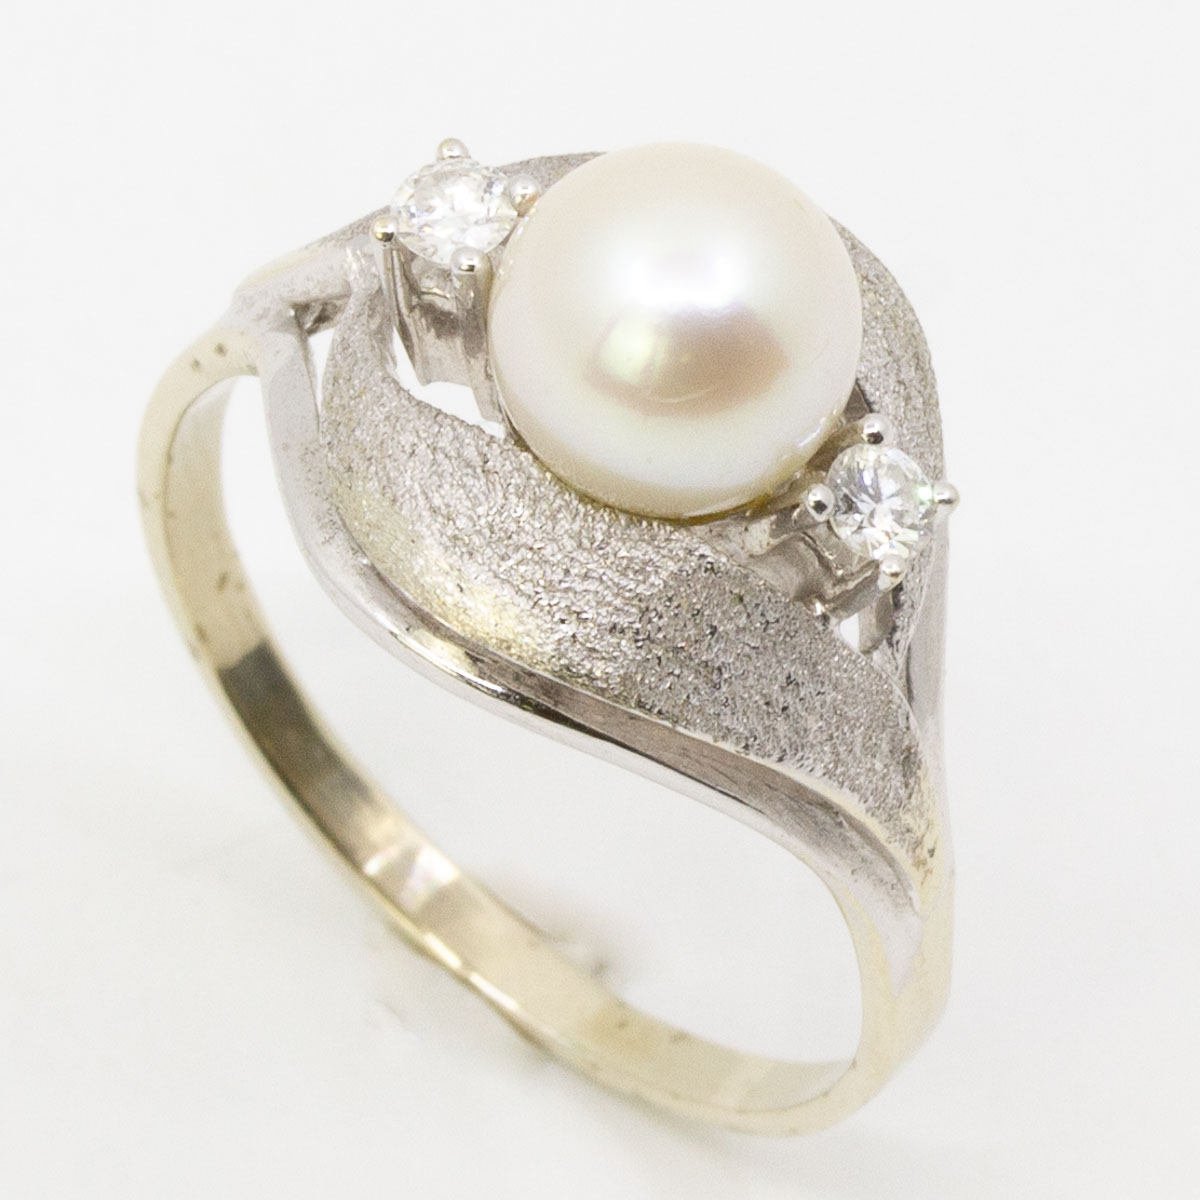 1 Ring 585/- mit 2 Brillanten, 1 Perle, Größe: 58, 4,4 g